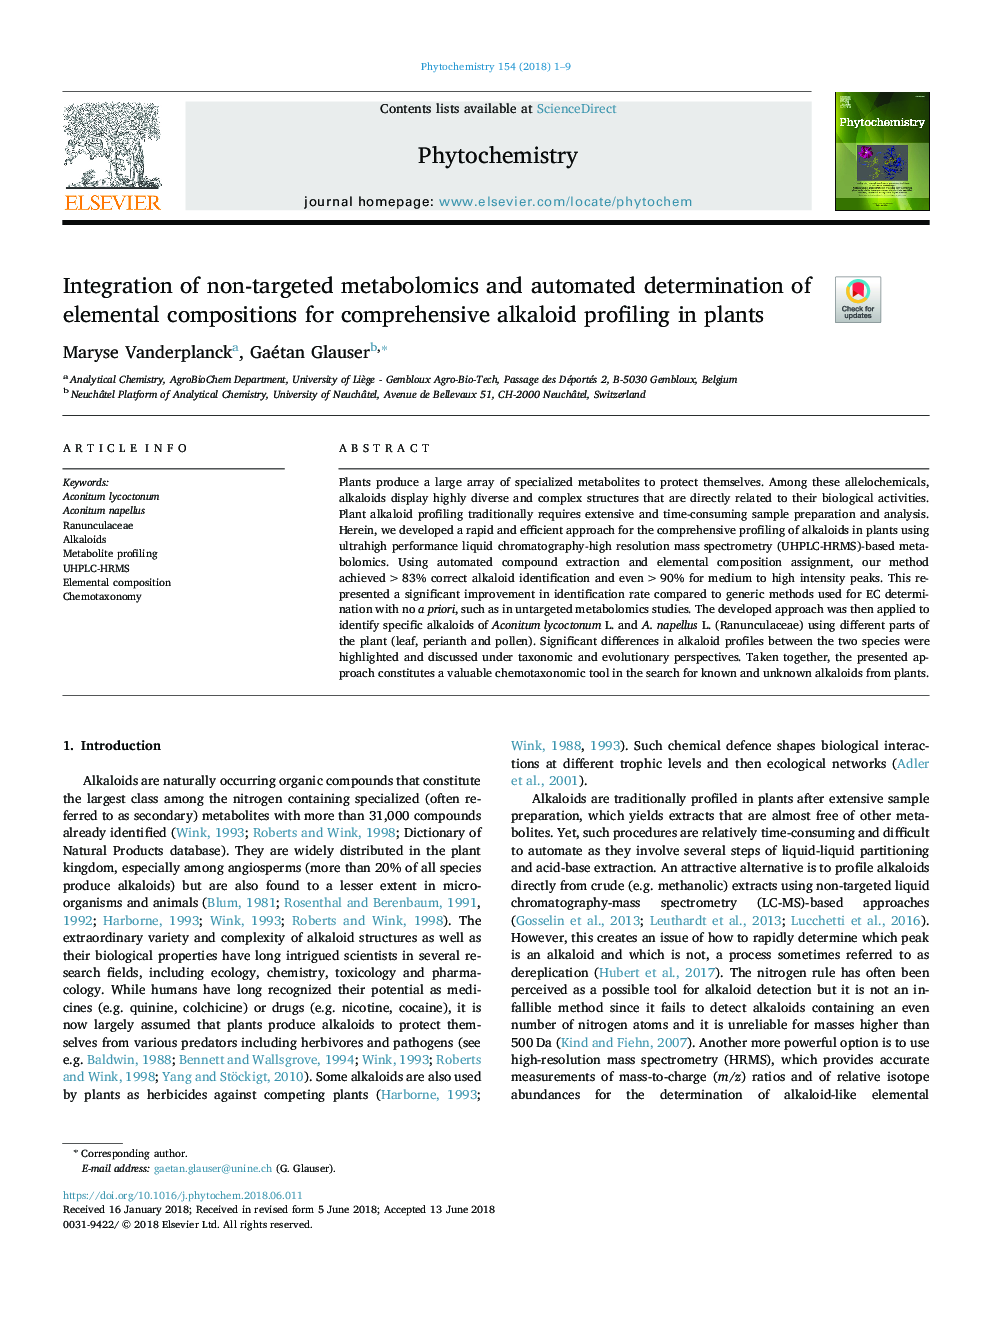 ادغام متابولومیک غیر هدفمند و تعیین خودکار ترکیبات عنصری برای پروفیل آلکالوئید جامع در گیاهان 